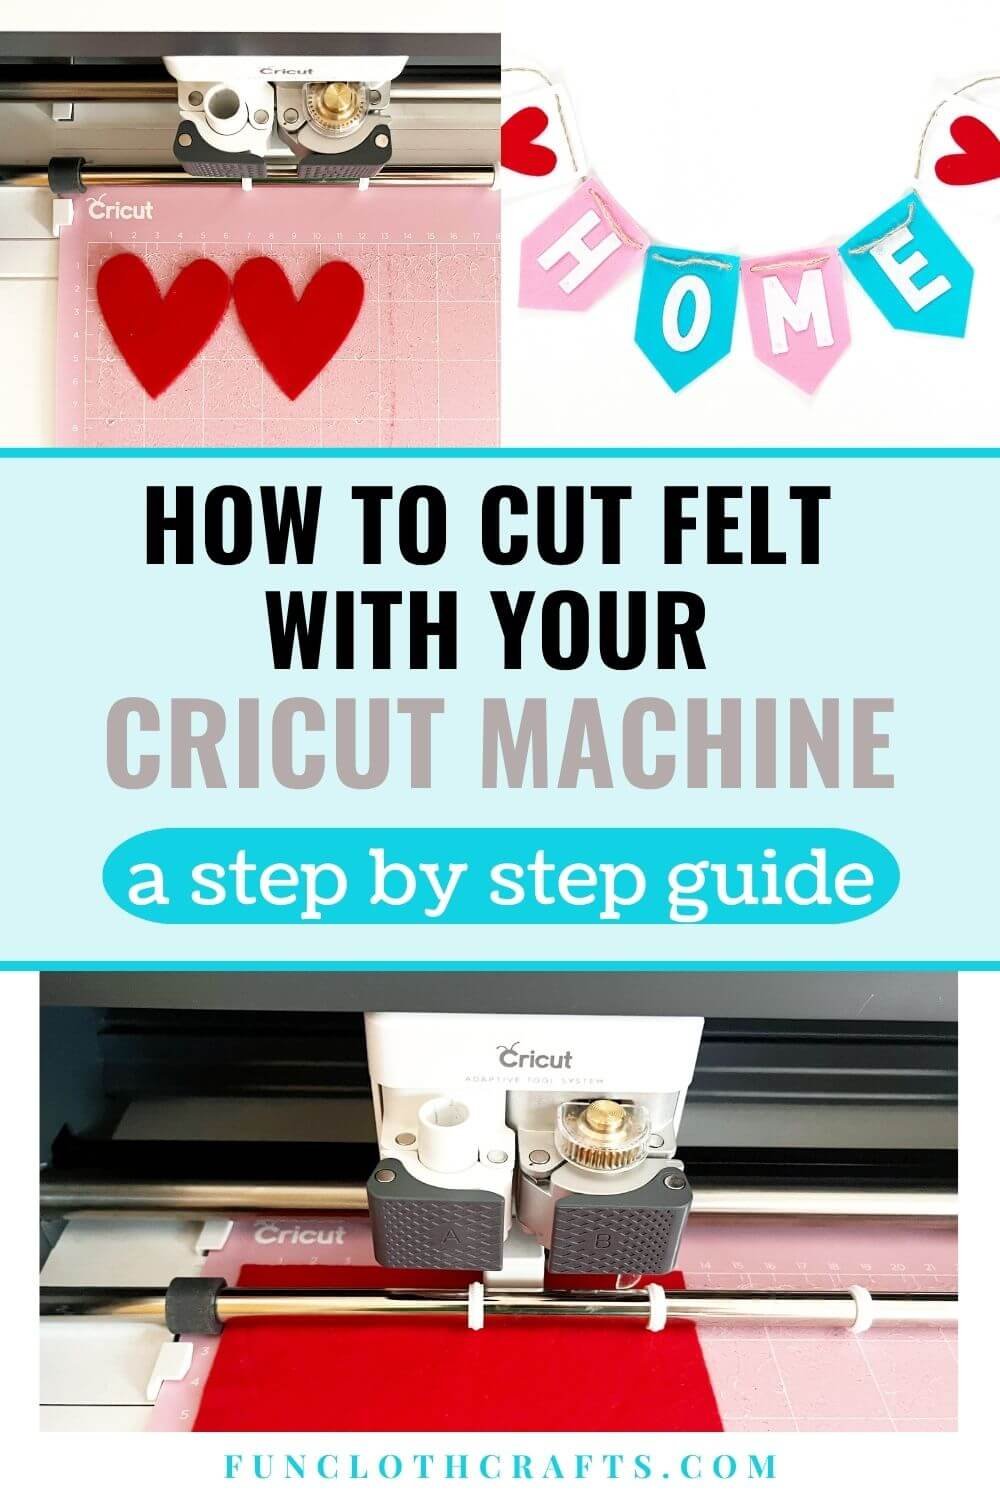 How to Clean a Cricut Cutting Mat: Cricut Beginner Tutorials 